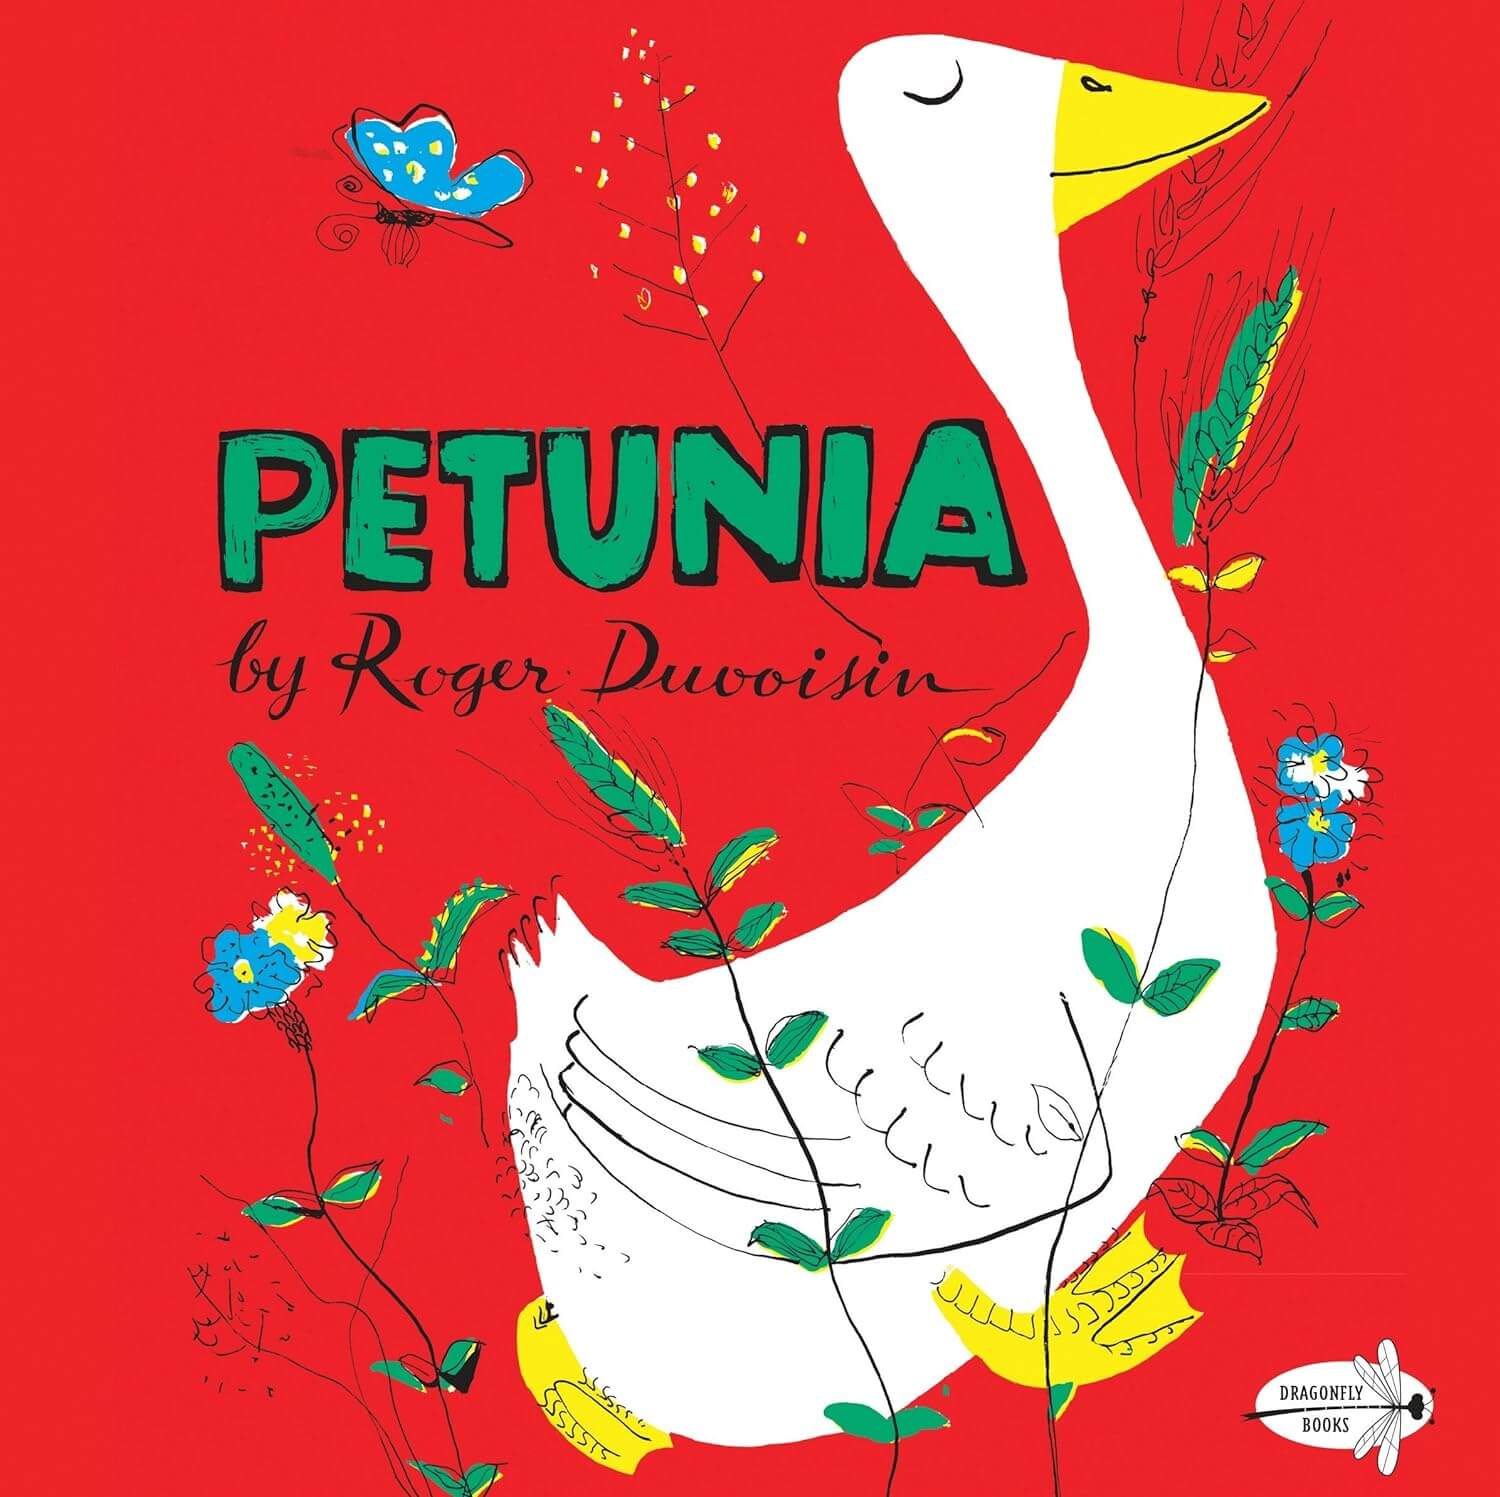 Book: Petunia